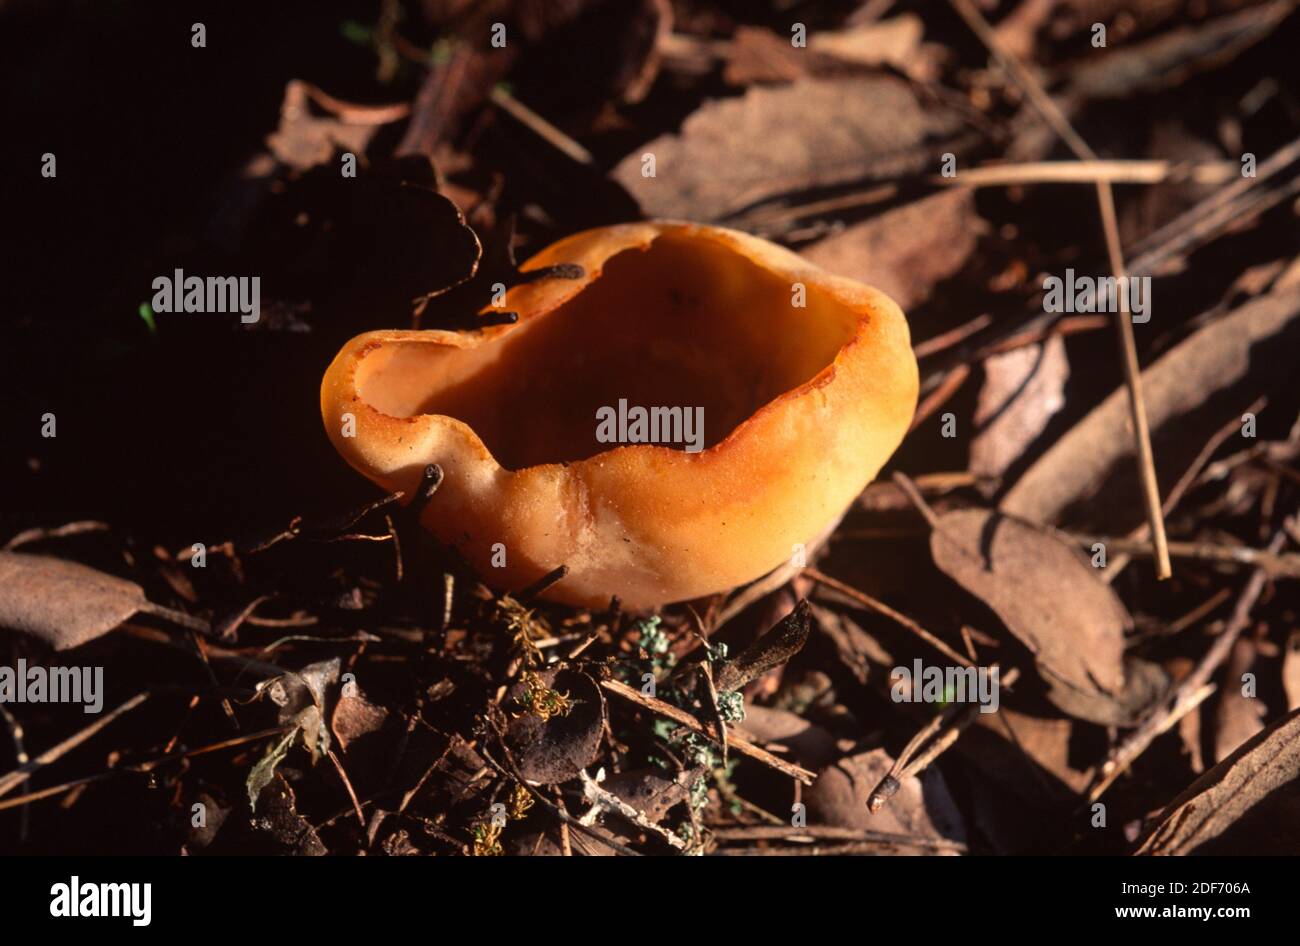 Bay cup fungus (Peziza badia) is a fungus toxic on raw. Stock Photo